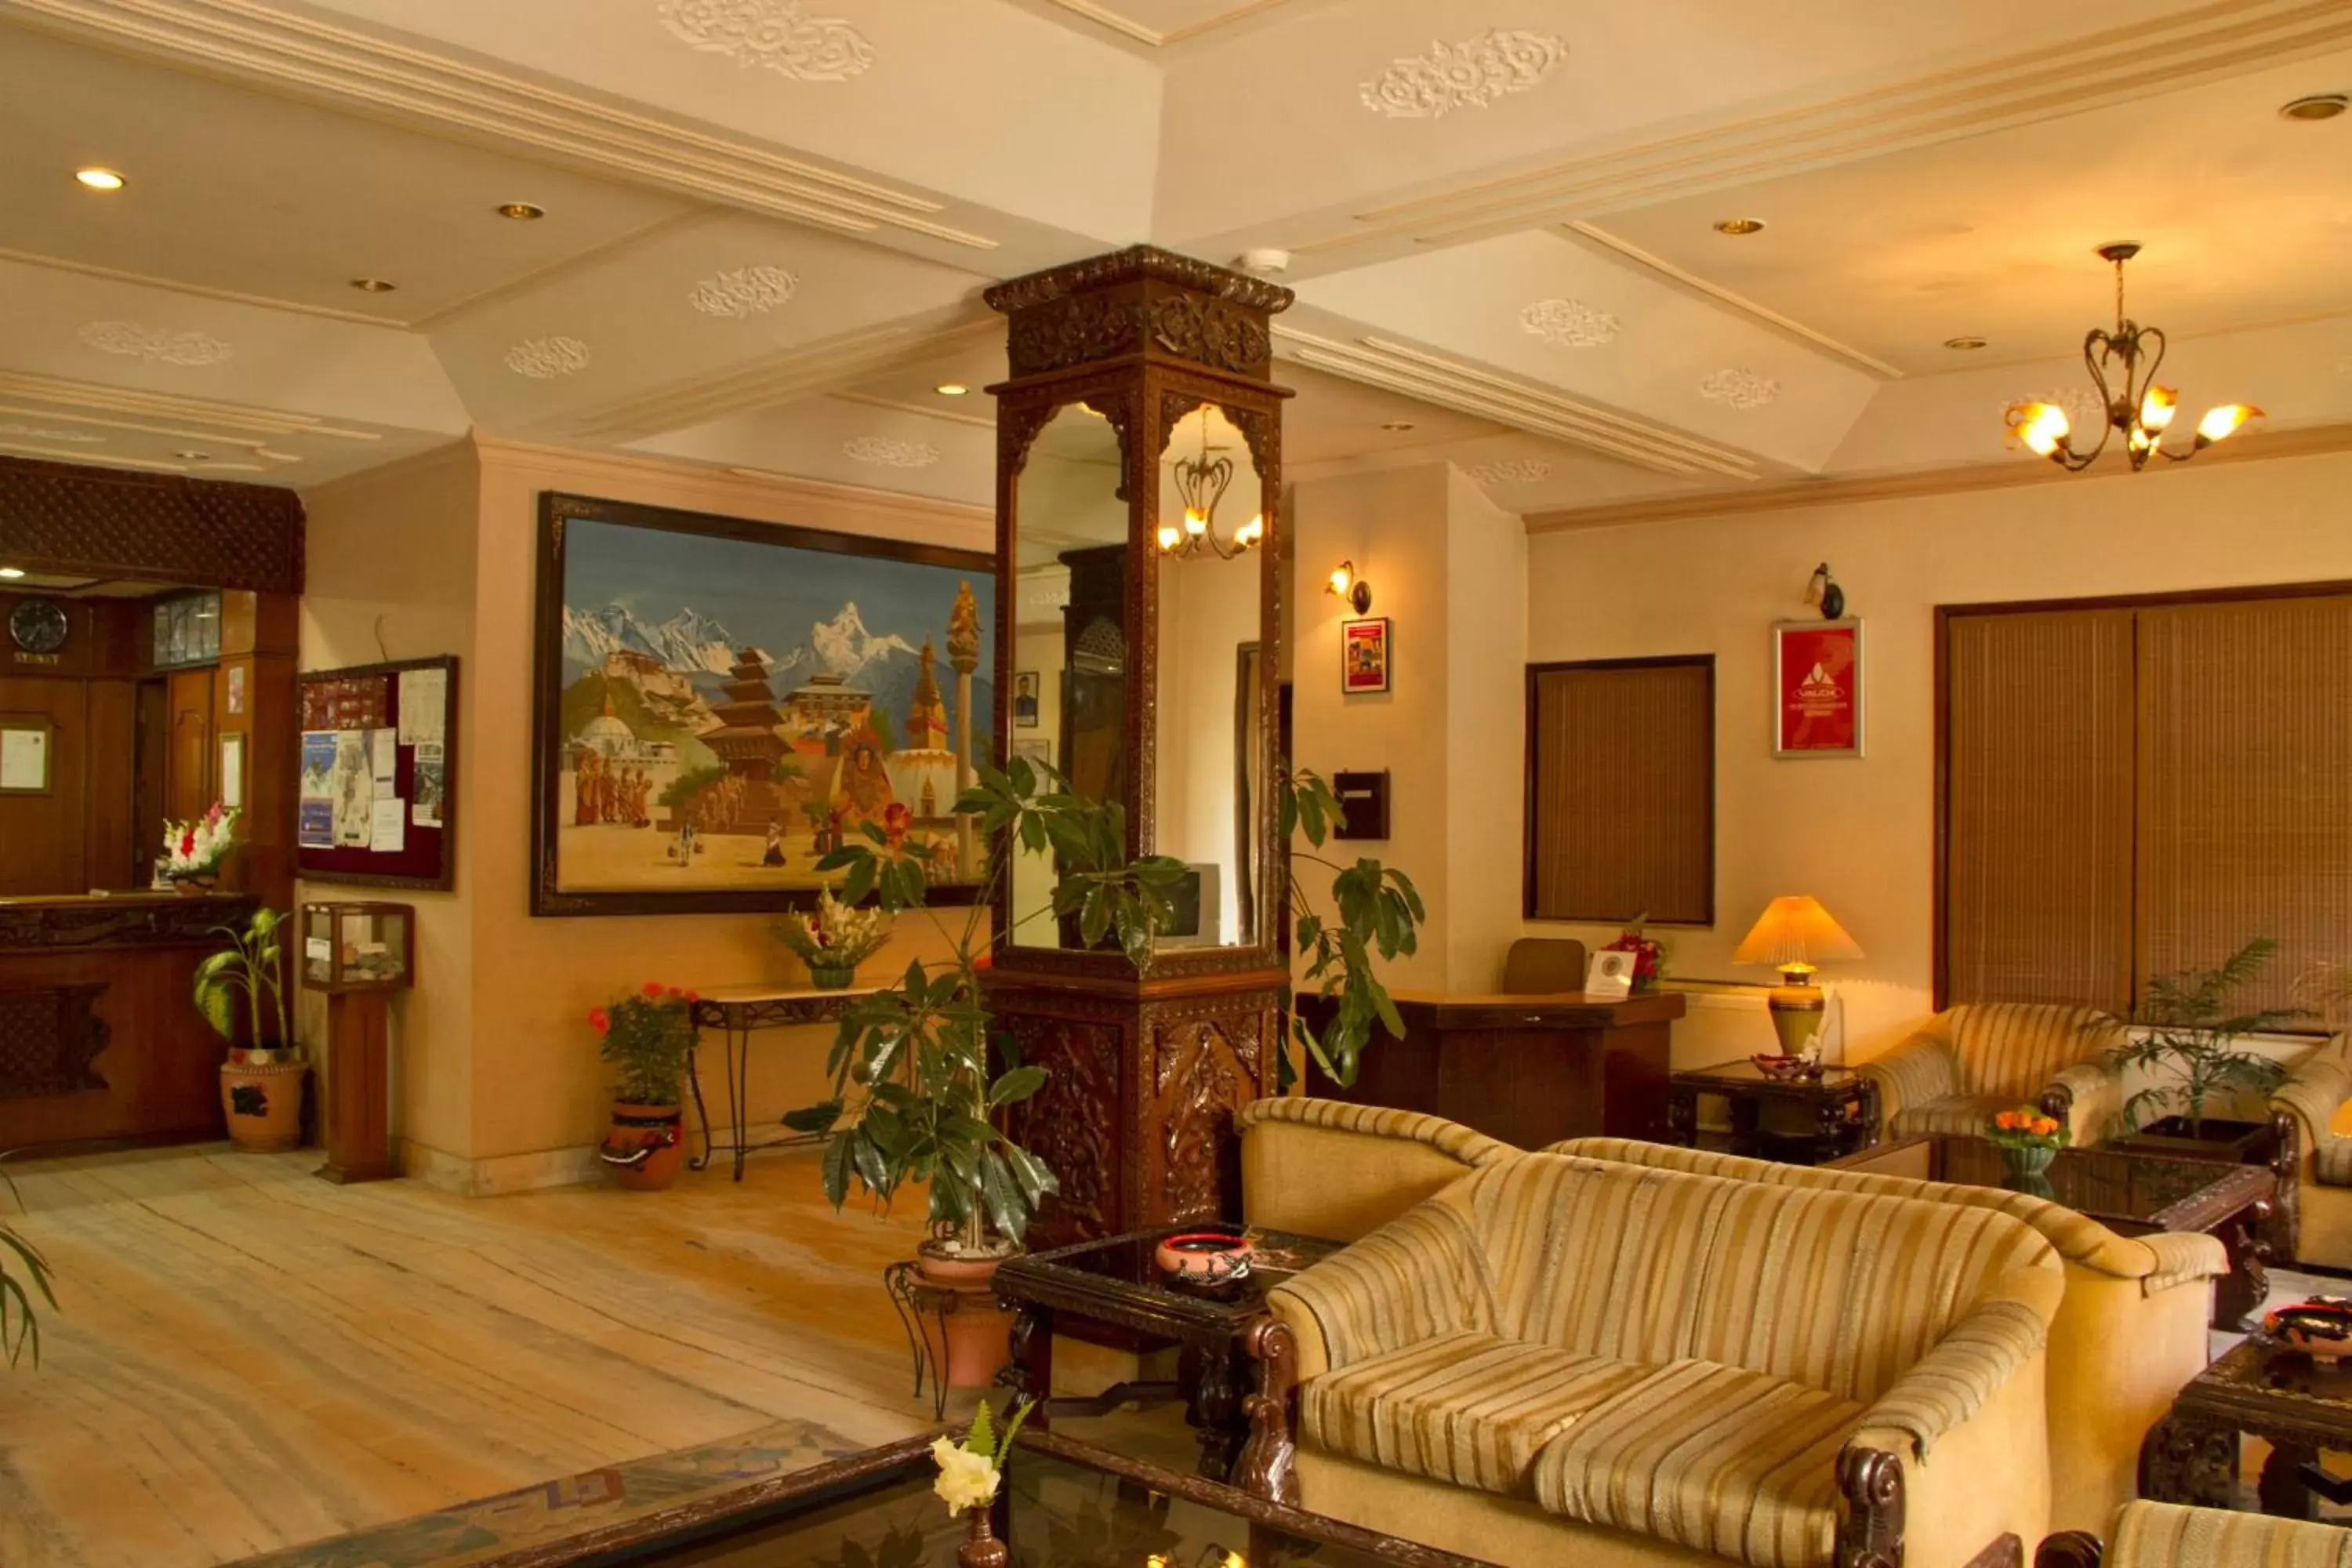 Lobby or reception, Lobby/Reception in Hotel Marshyangdi